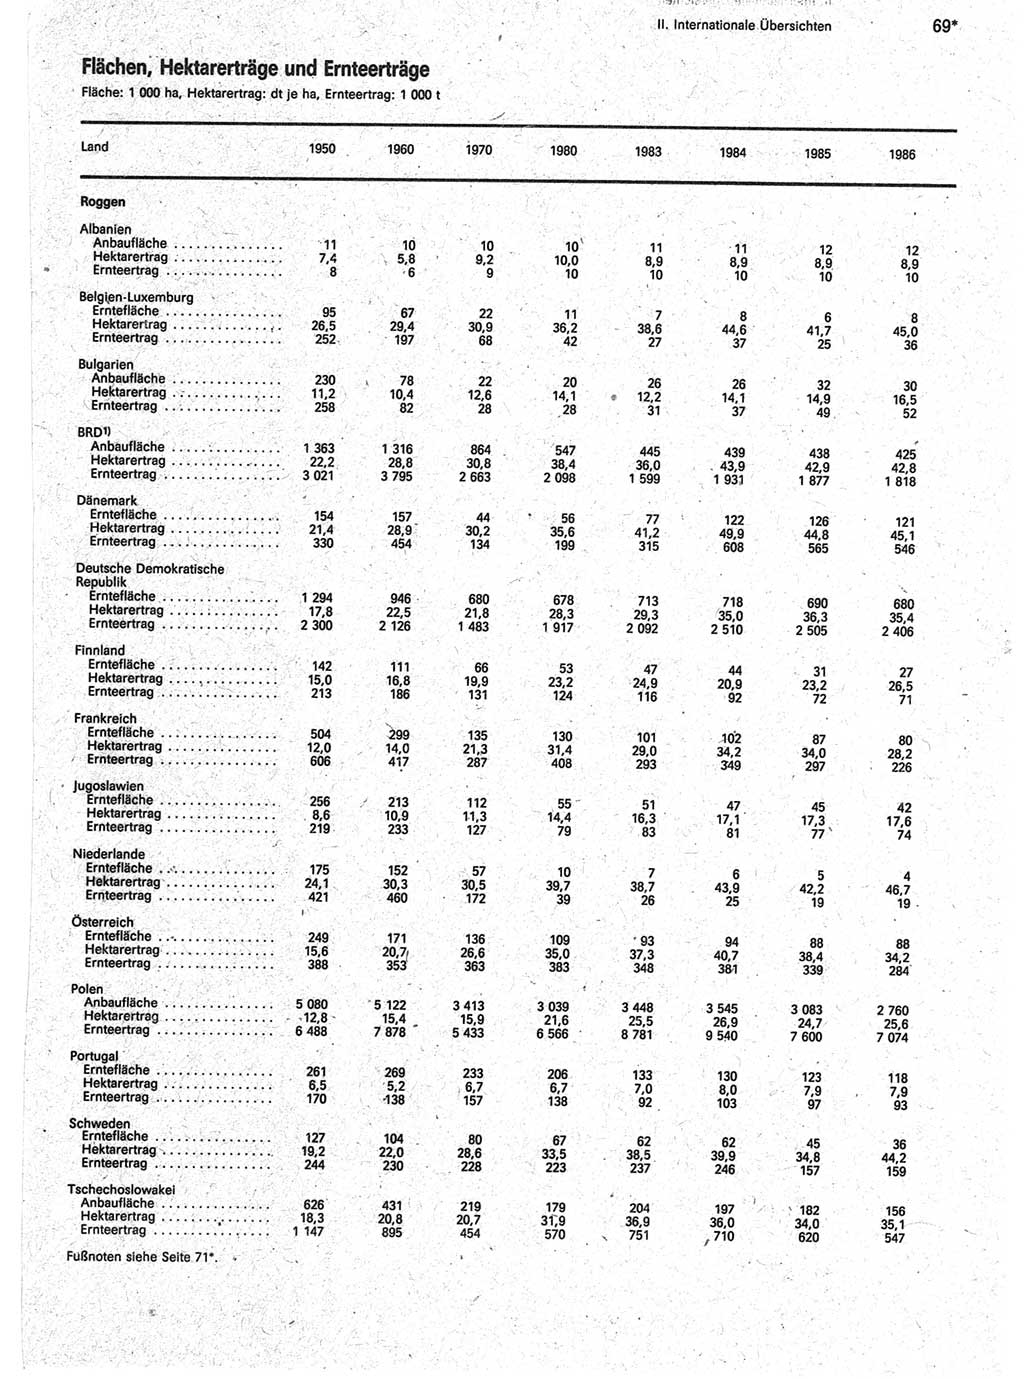 Statistisches Jahrbuch der Deutschen Demokratischen Republik (DDR) 1988, Seite 69 (Stat. Jb. DDR 1988, S. 69)